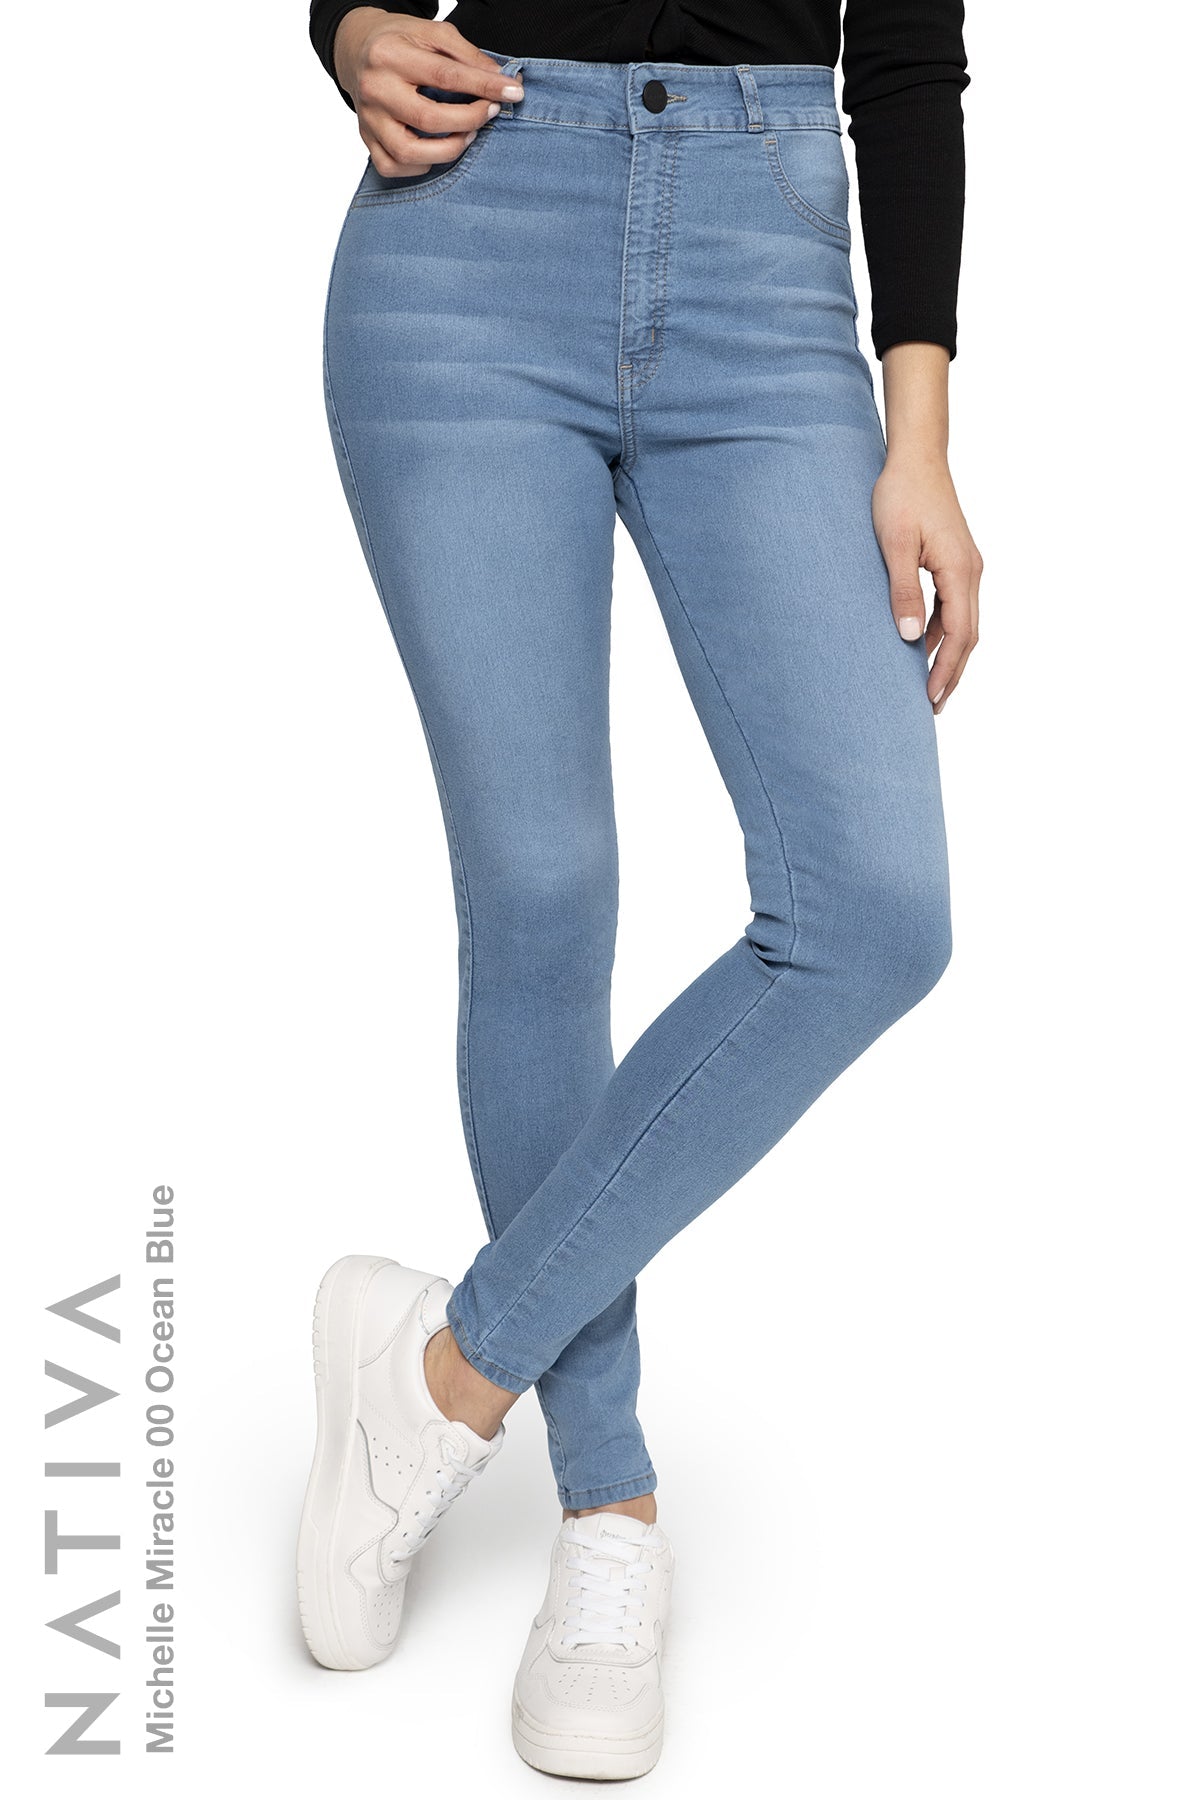 Next Size L Large 16-18 R Bleach Blue Jeans Contour Flex Skinny High Rise  Gift